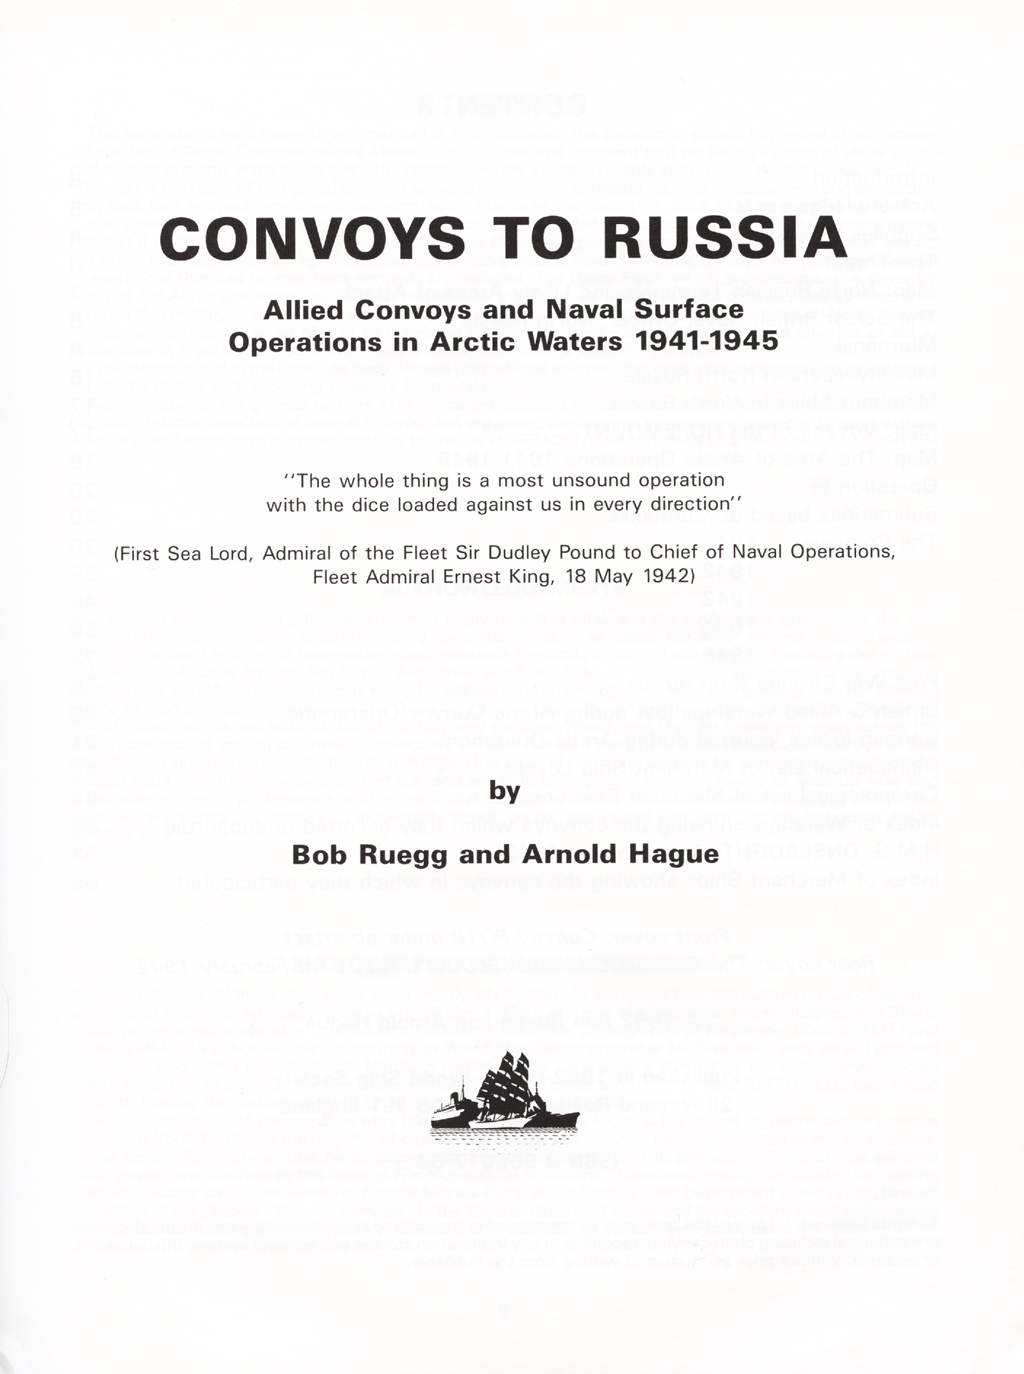 Convoys to Russia 1941-1945 B. Ruegg & A. Hague 1992 WSS (3) (ab).jpg